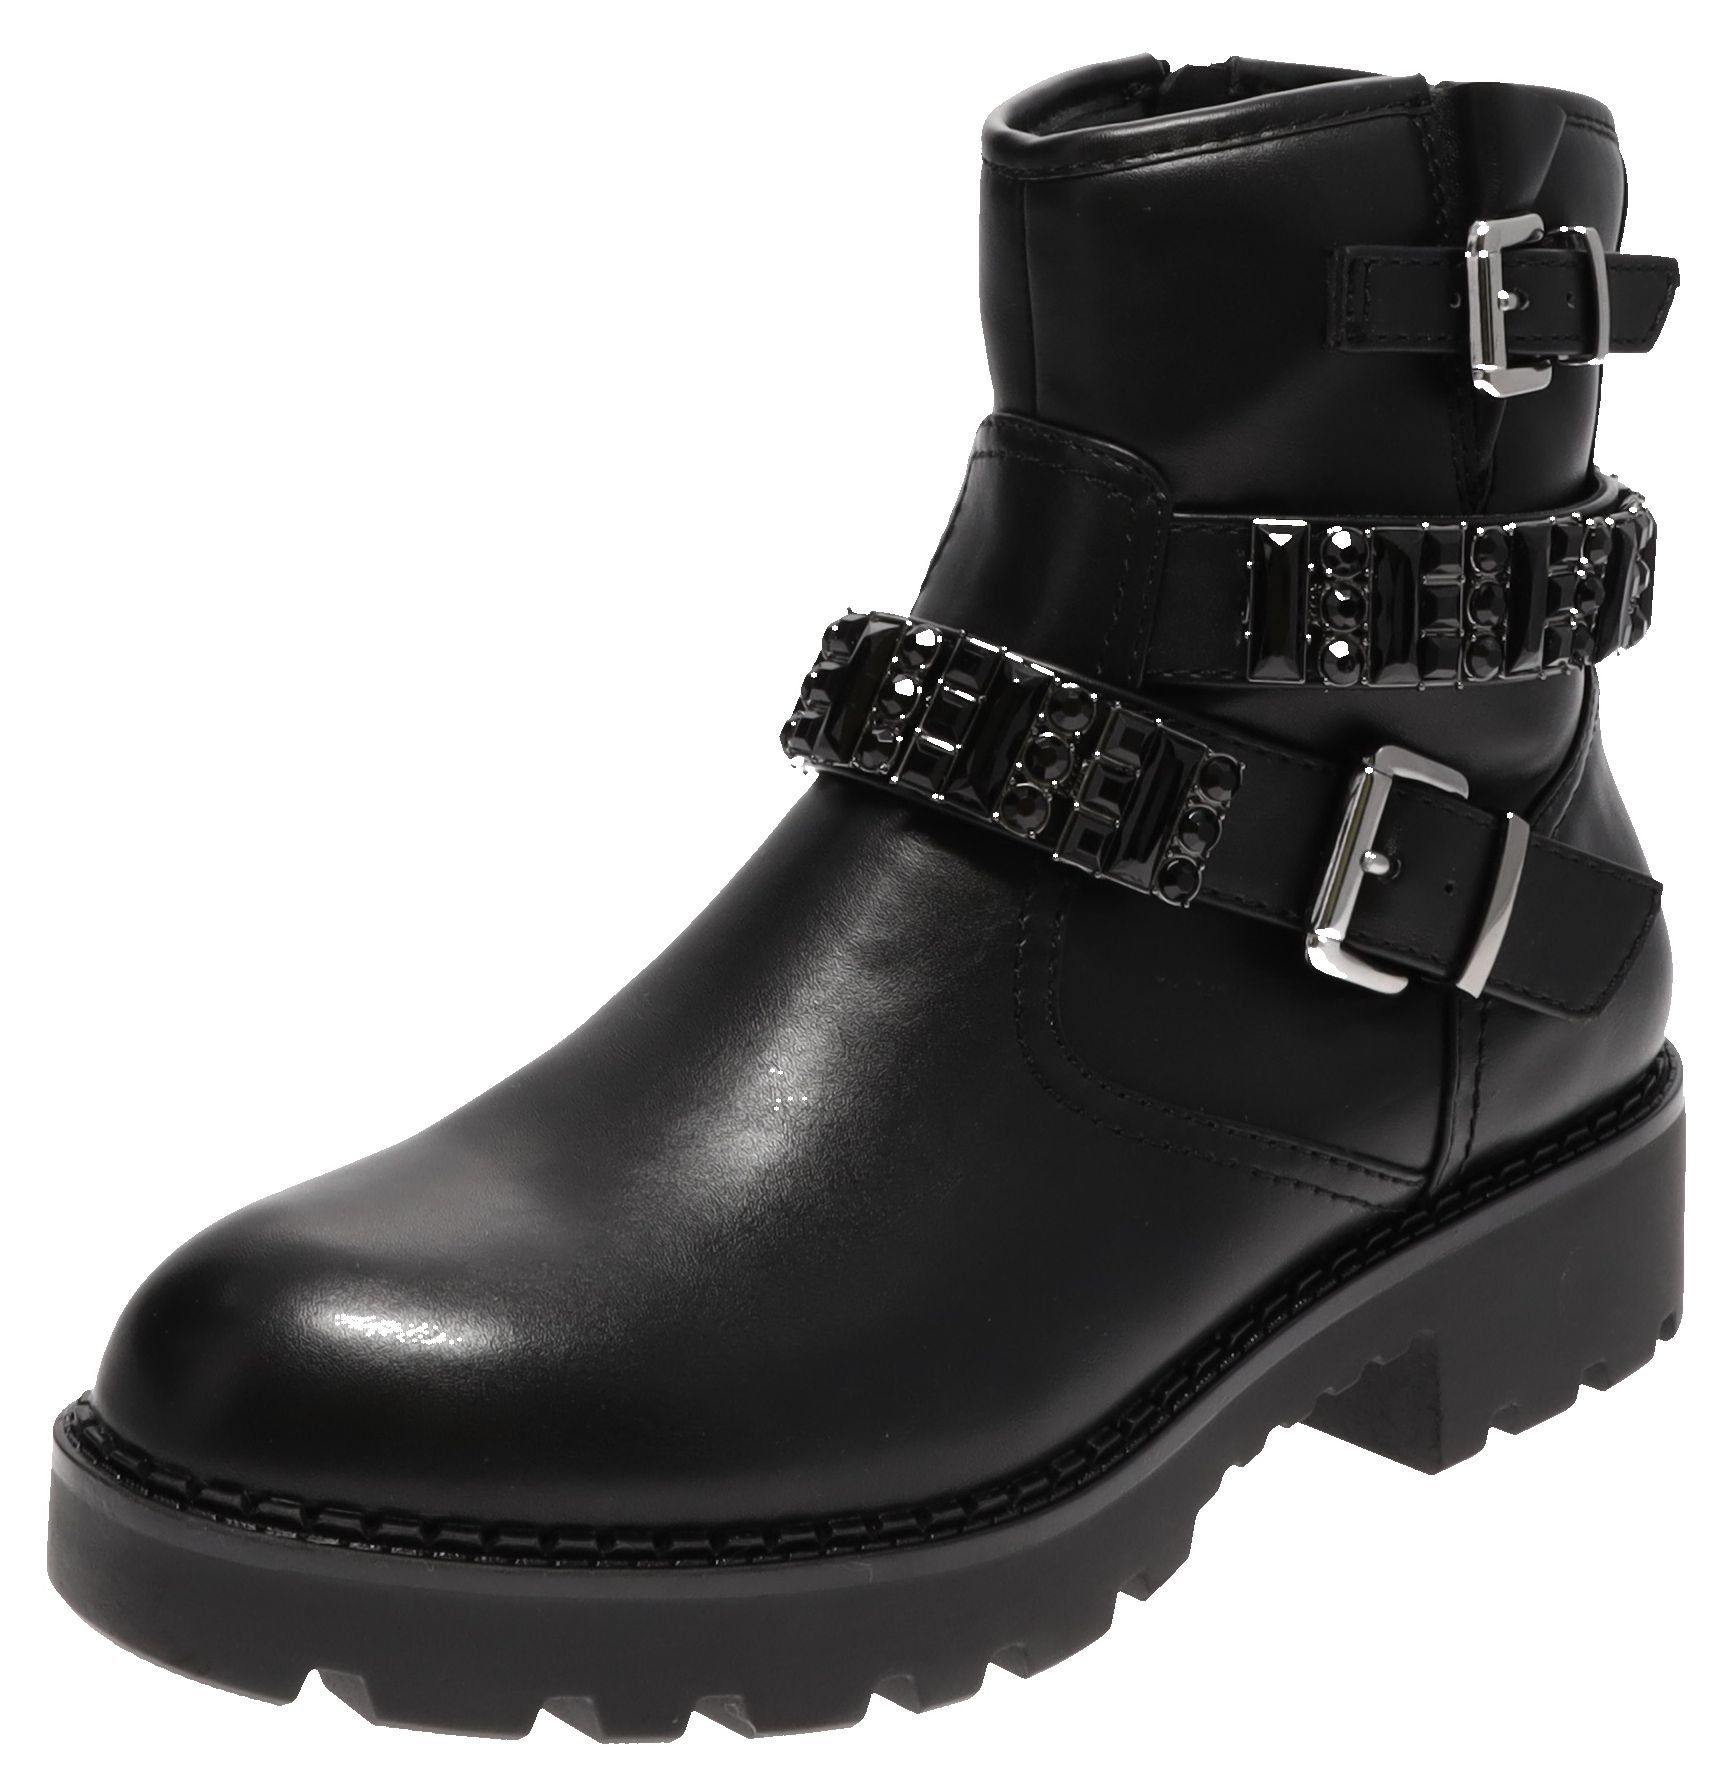 Buffalo Moriah Black Damen Stiefelette Ankle Boots Schwarz Stiefelette Online Kaufen Otto